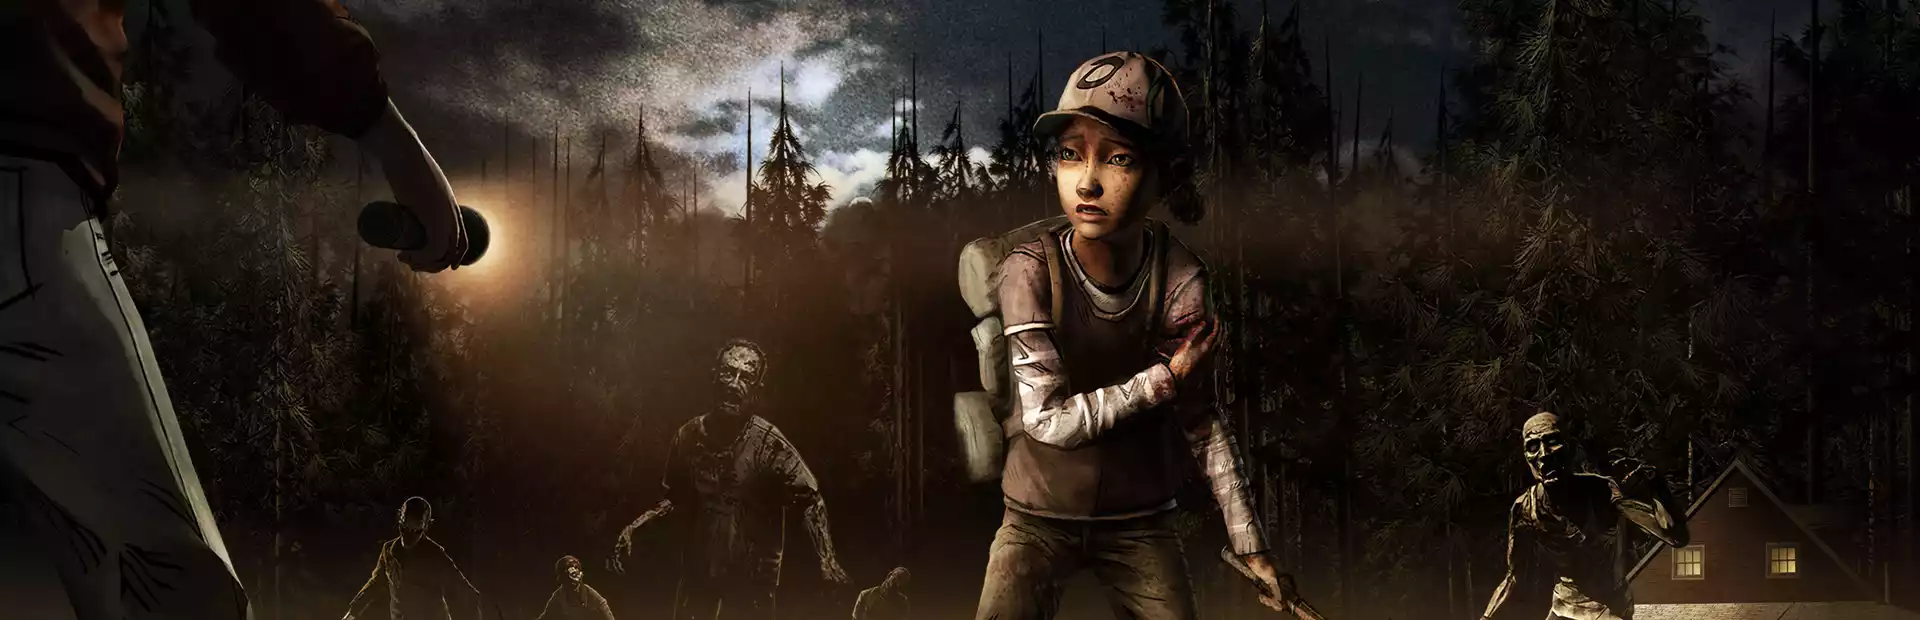 The Walking Dead: Season Two Steam Key GLOBAL